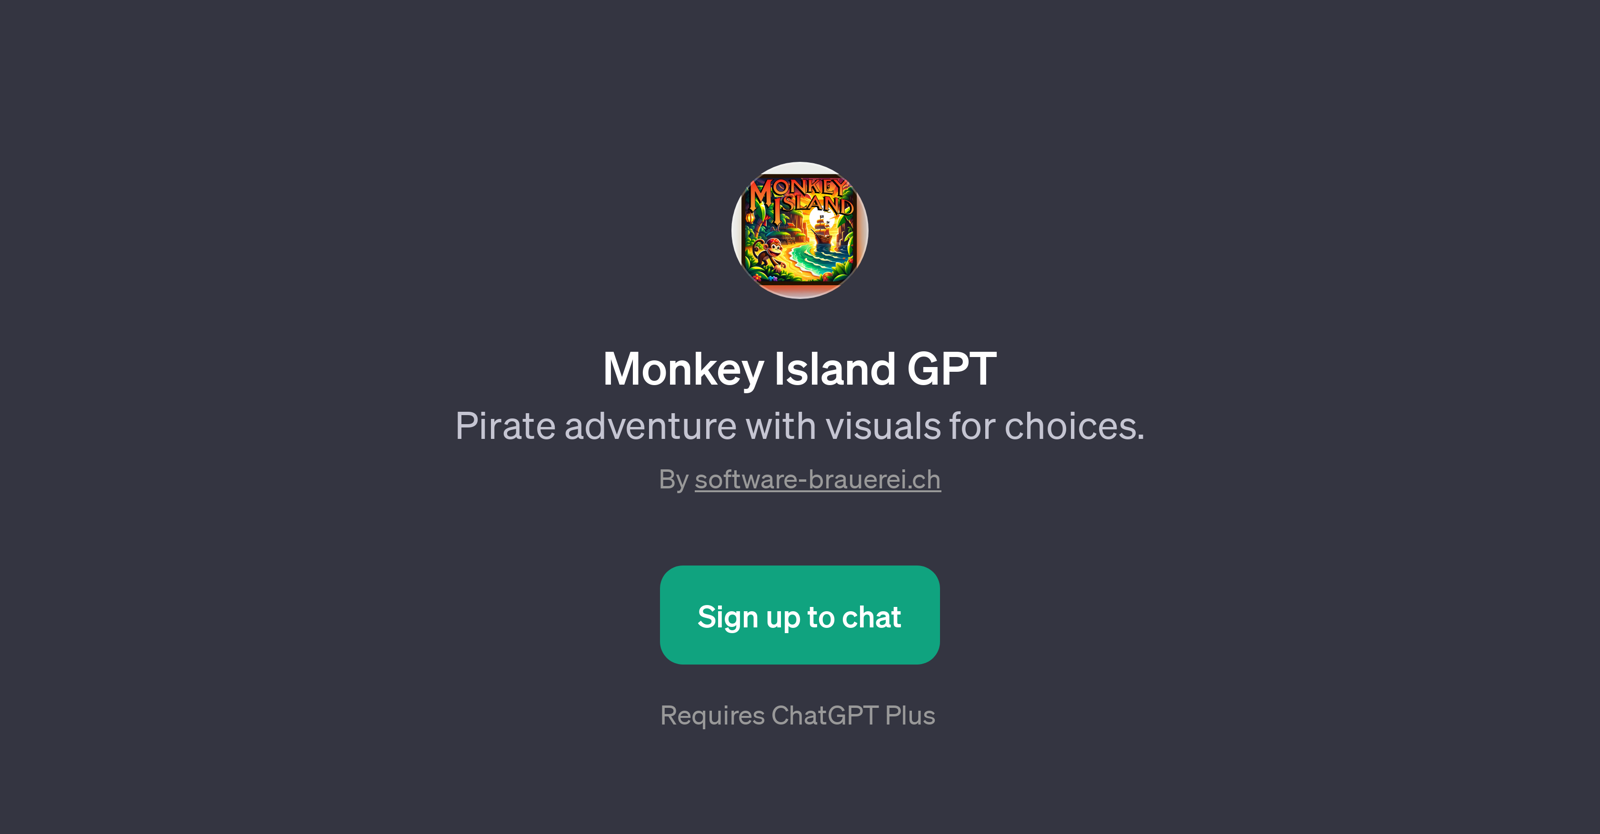 Monkey Island GPT website